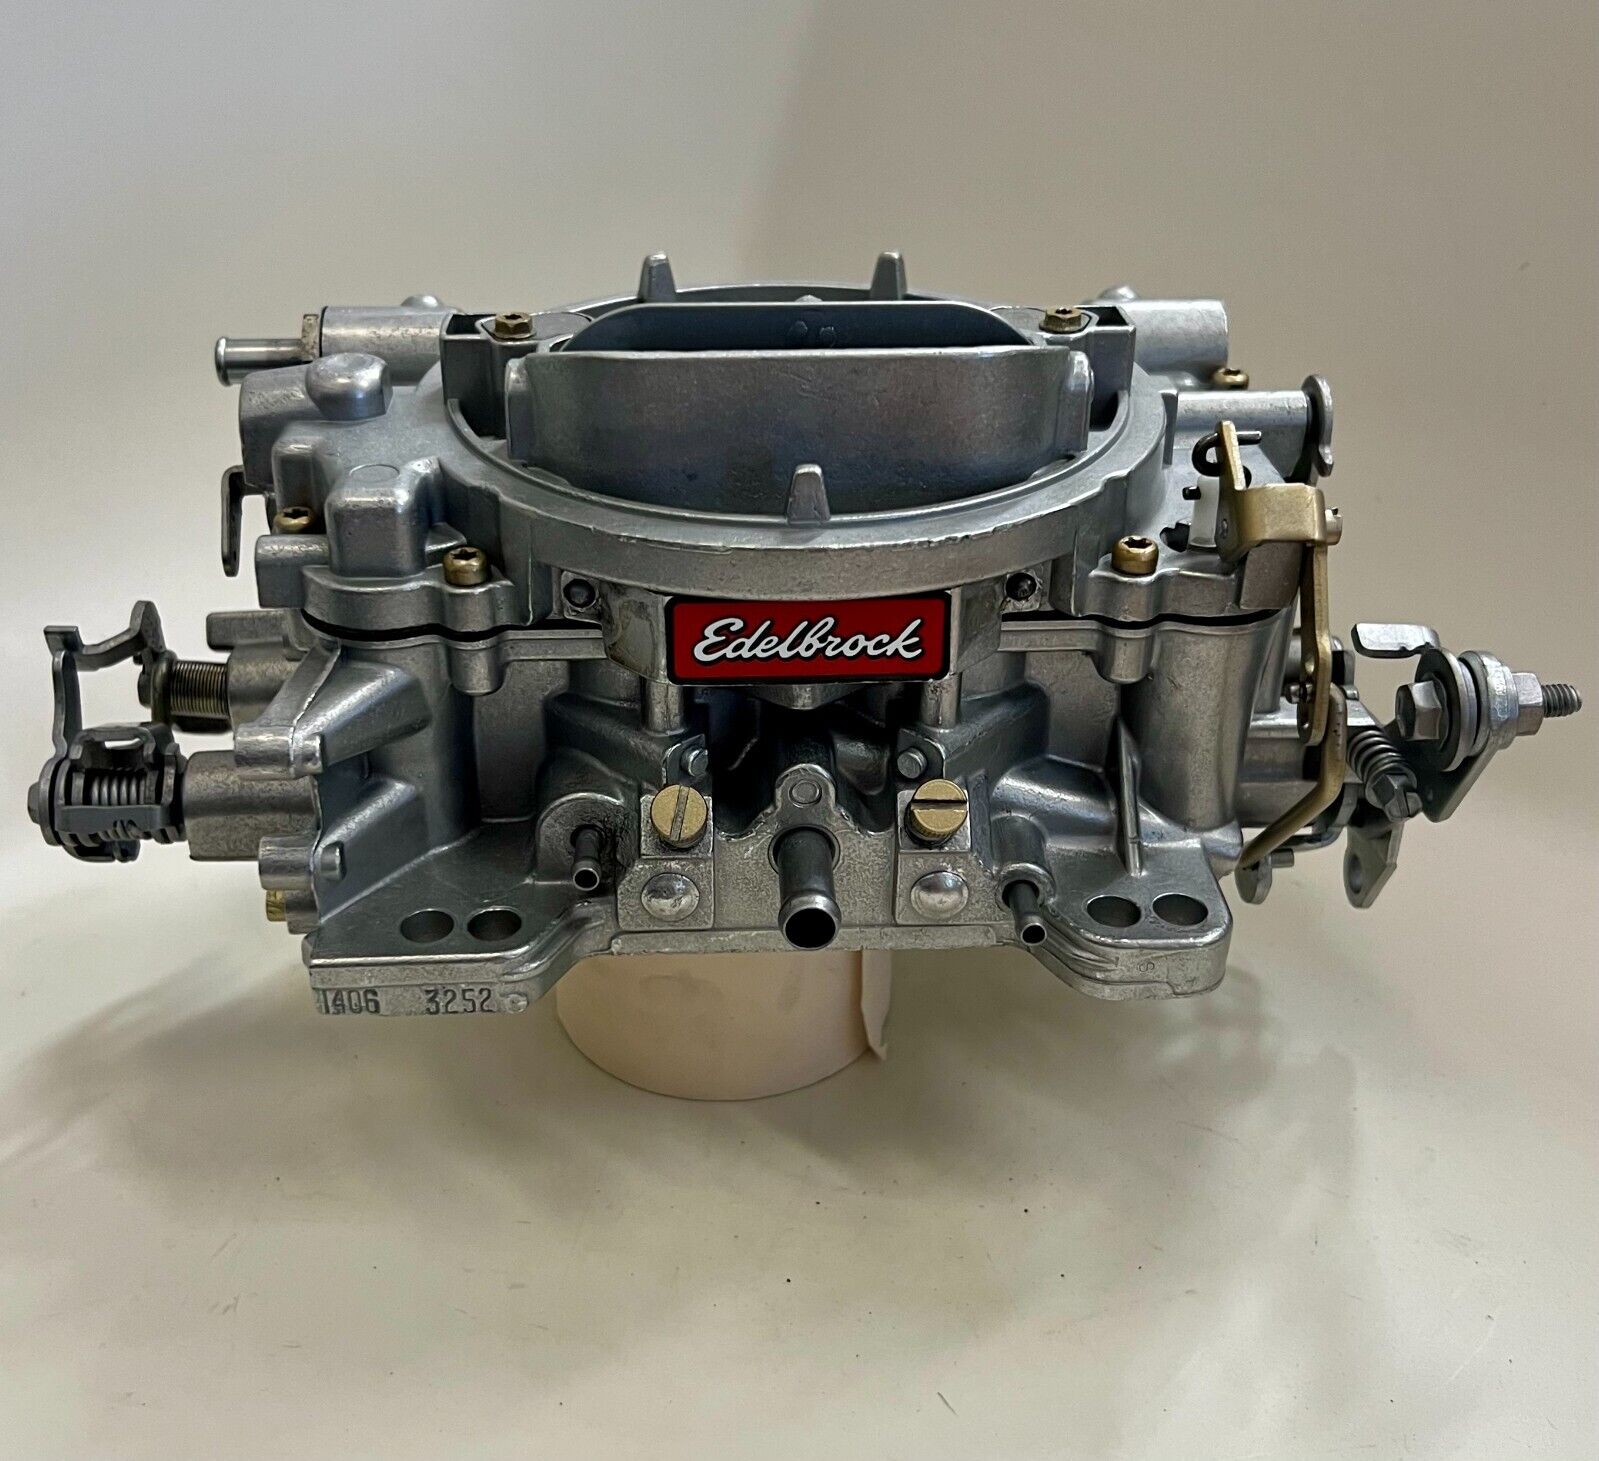 Edelbrock/Carter 4bbl Carburetor Rebuild Service